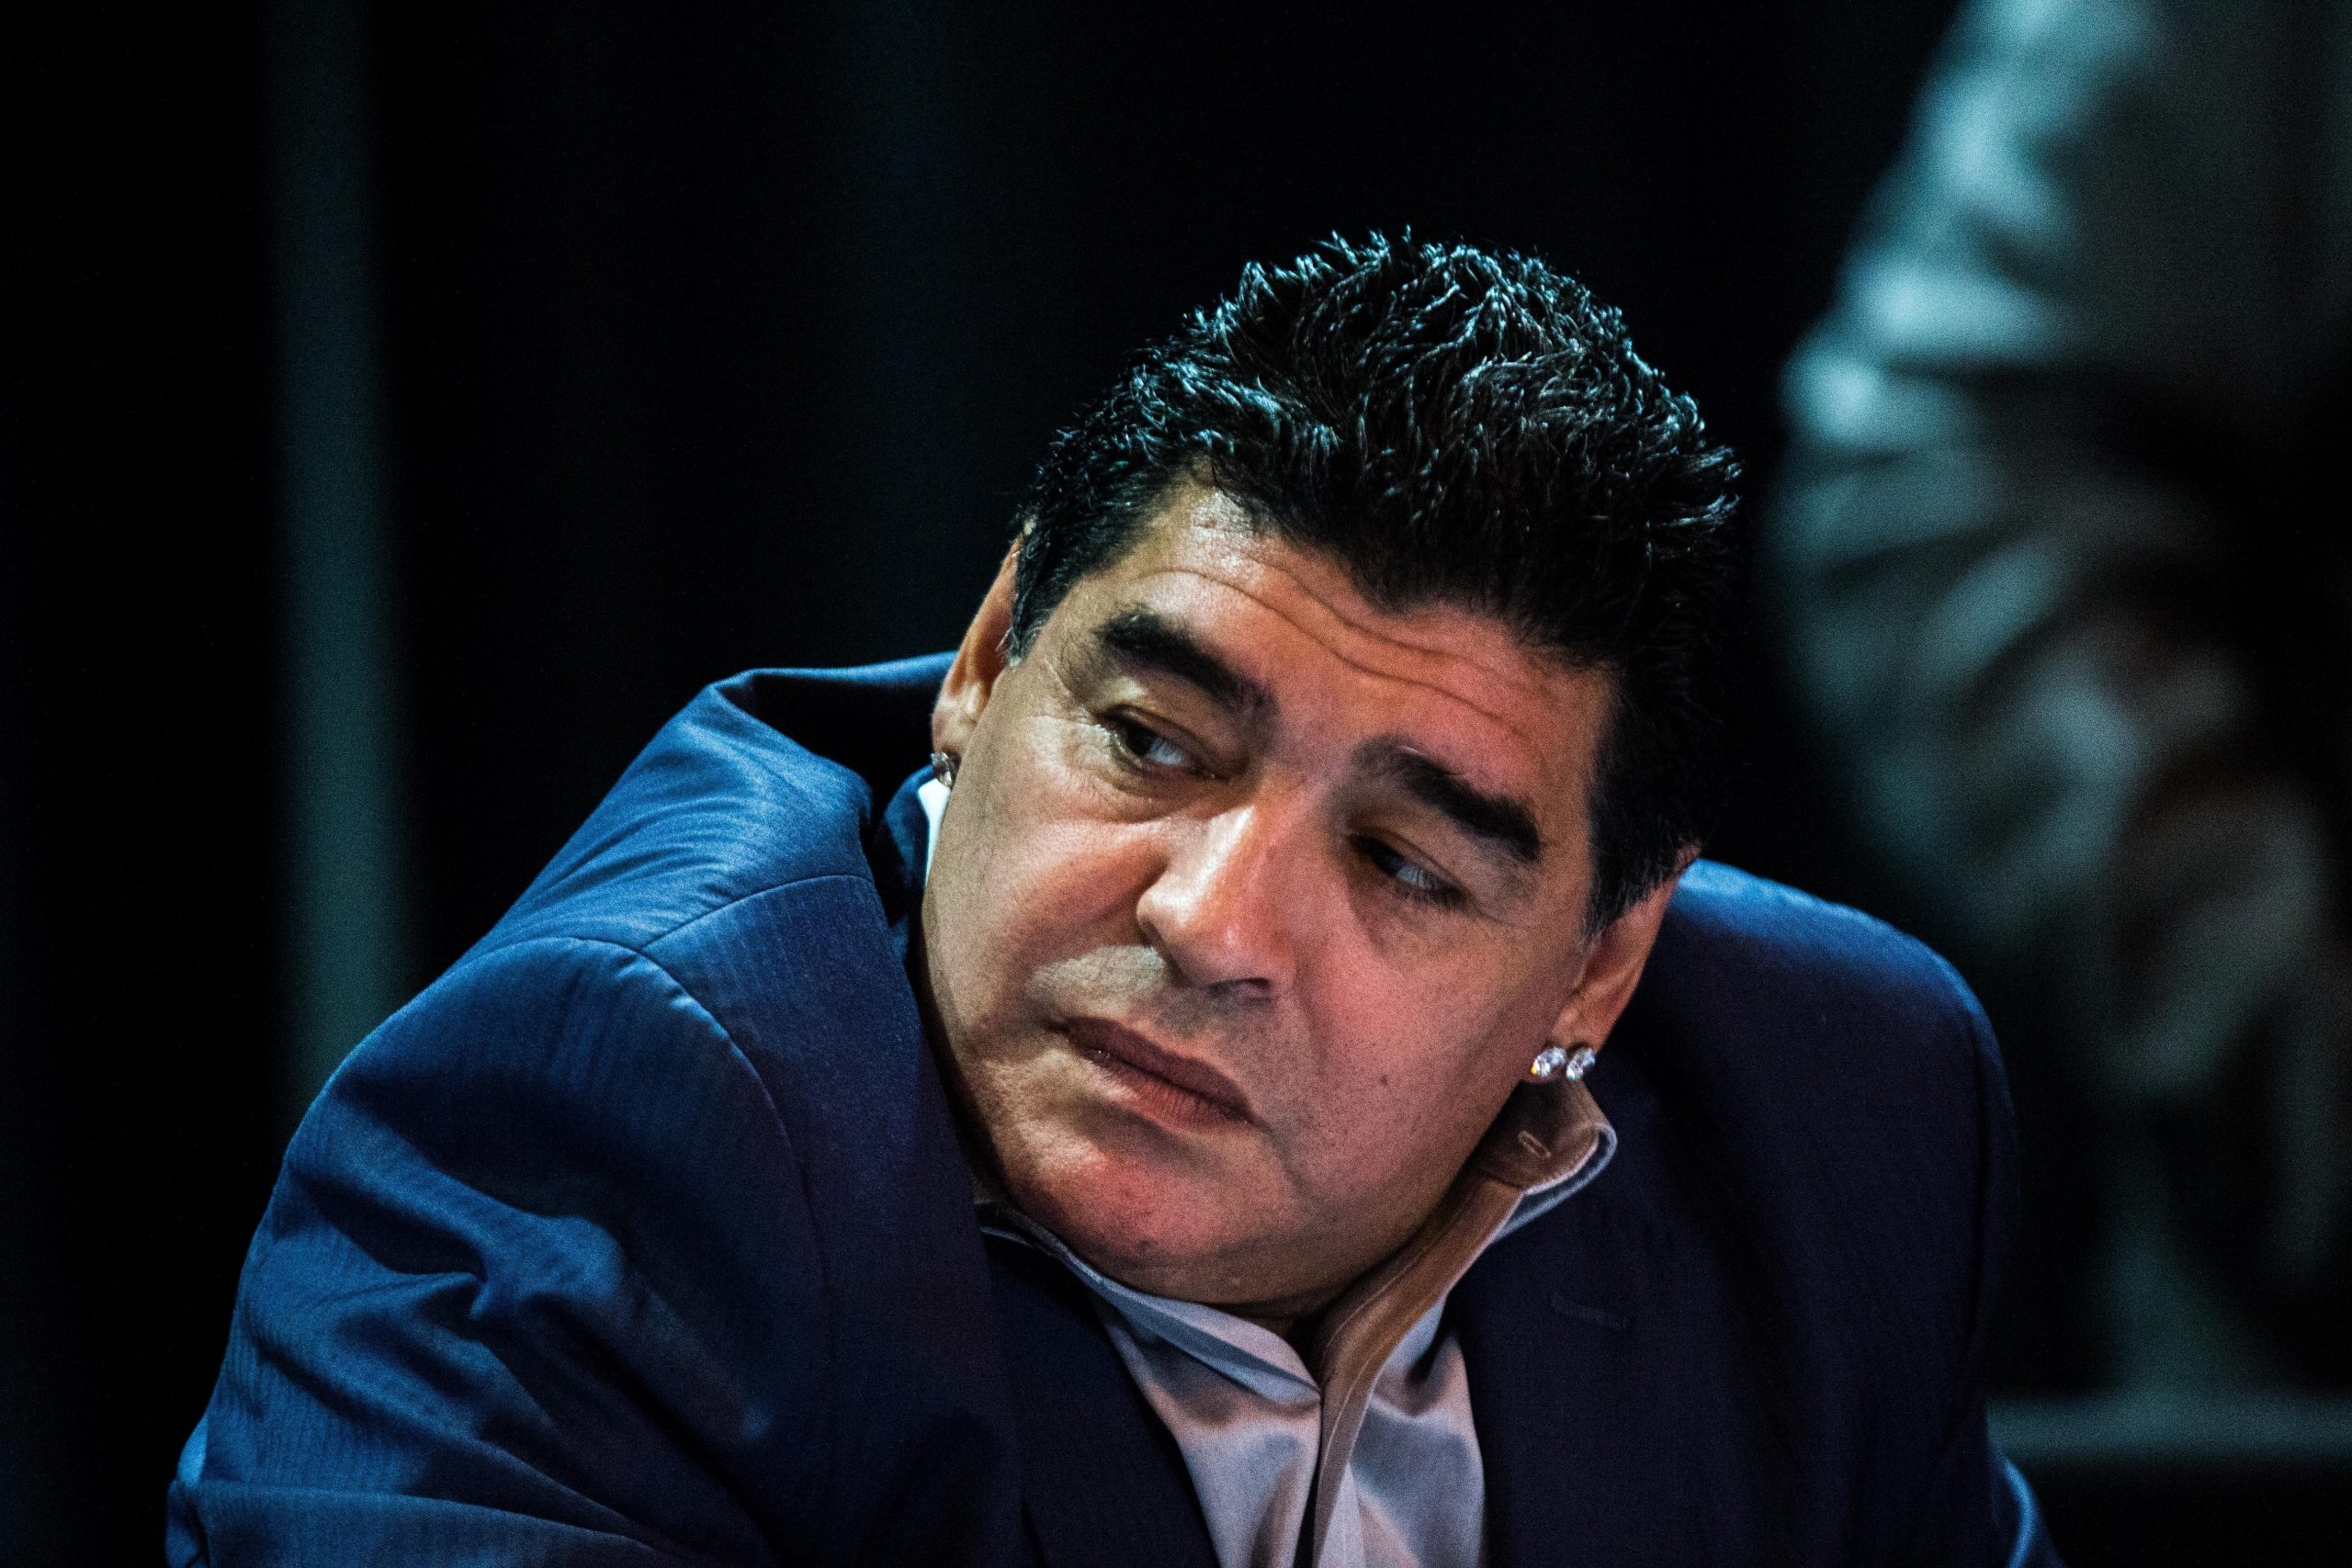 Coração de Maradona pesava meio quilo e estava muito dilatado, diz legista